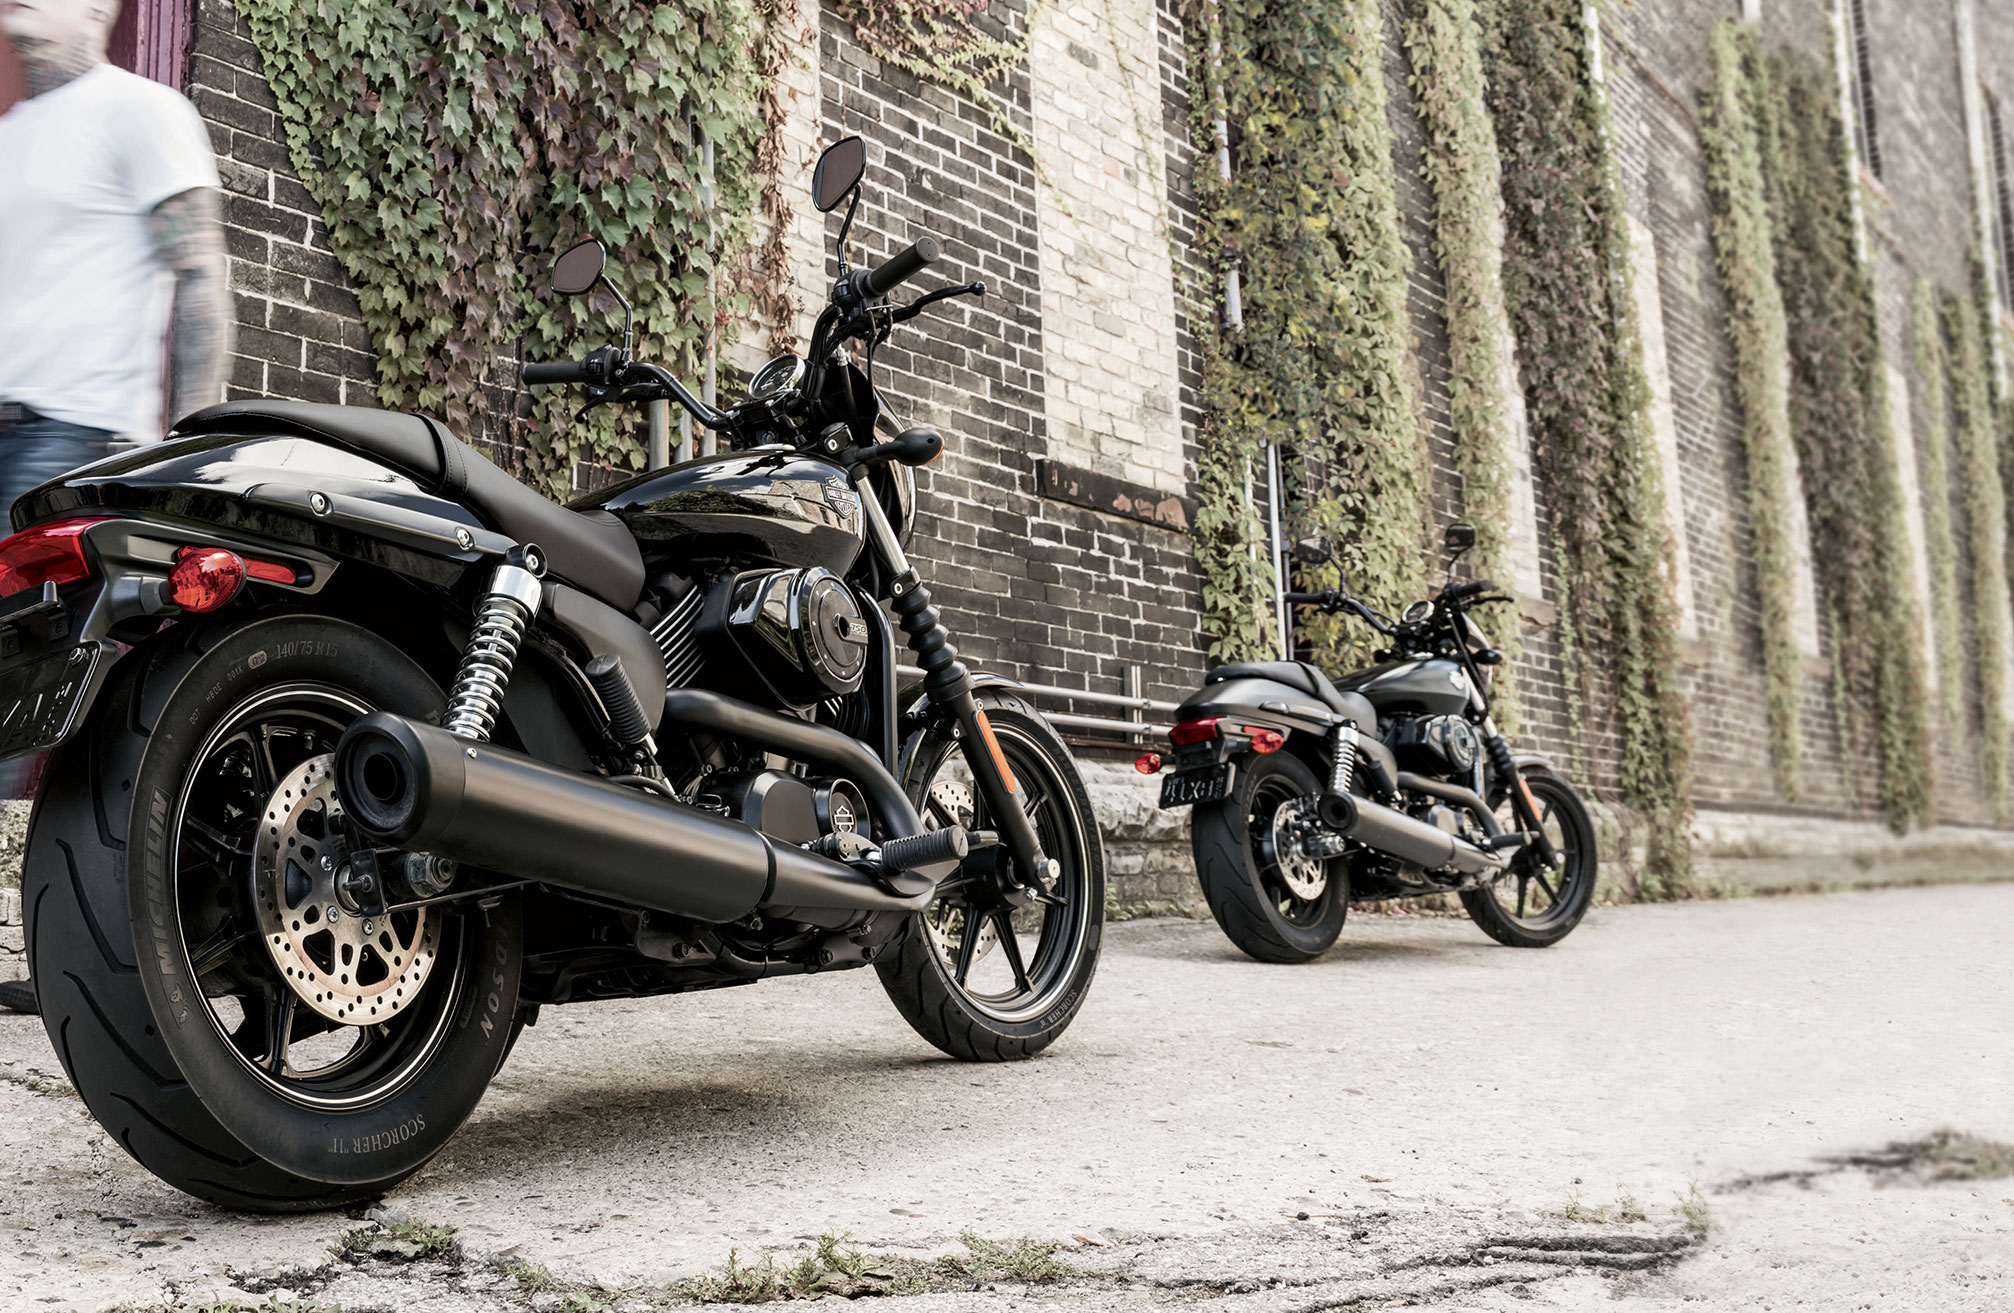 2014 Harley Davidson Motorcycle Models At Total Motorcycle